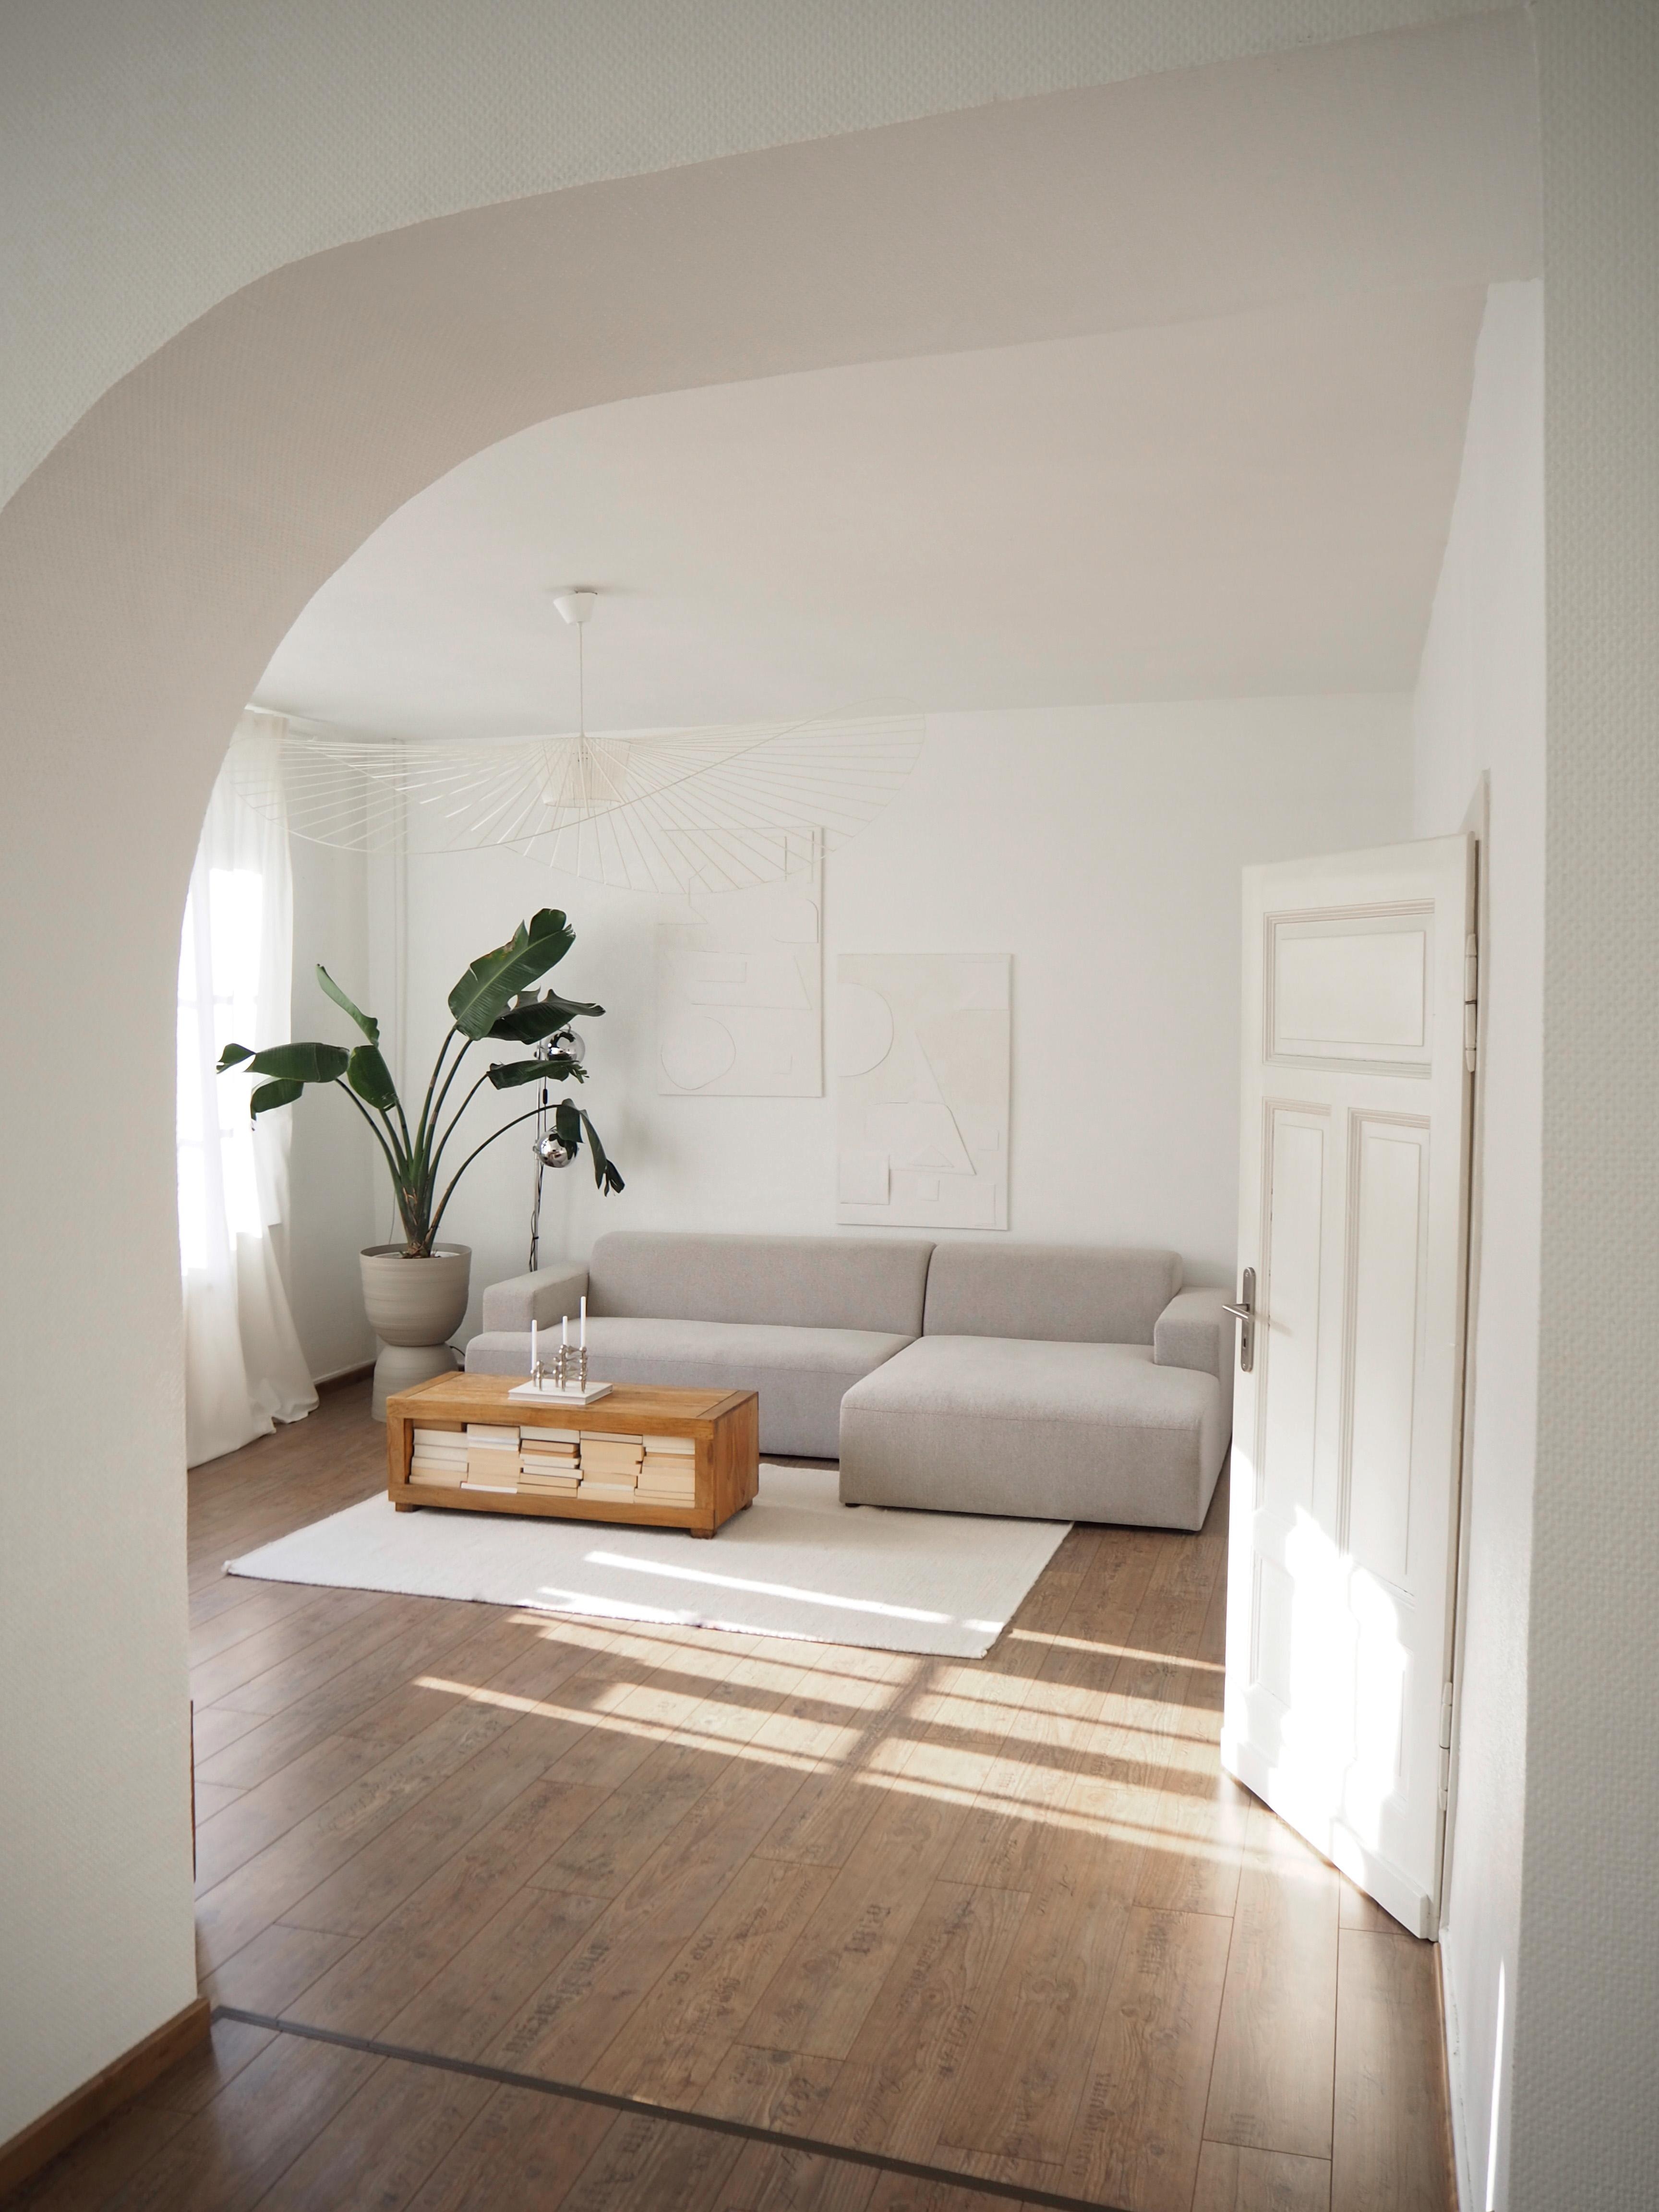 #wohnzimmer #altbau #ordnung #minimalismus #couch #sofa #sofaecke #weiss #pflanze